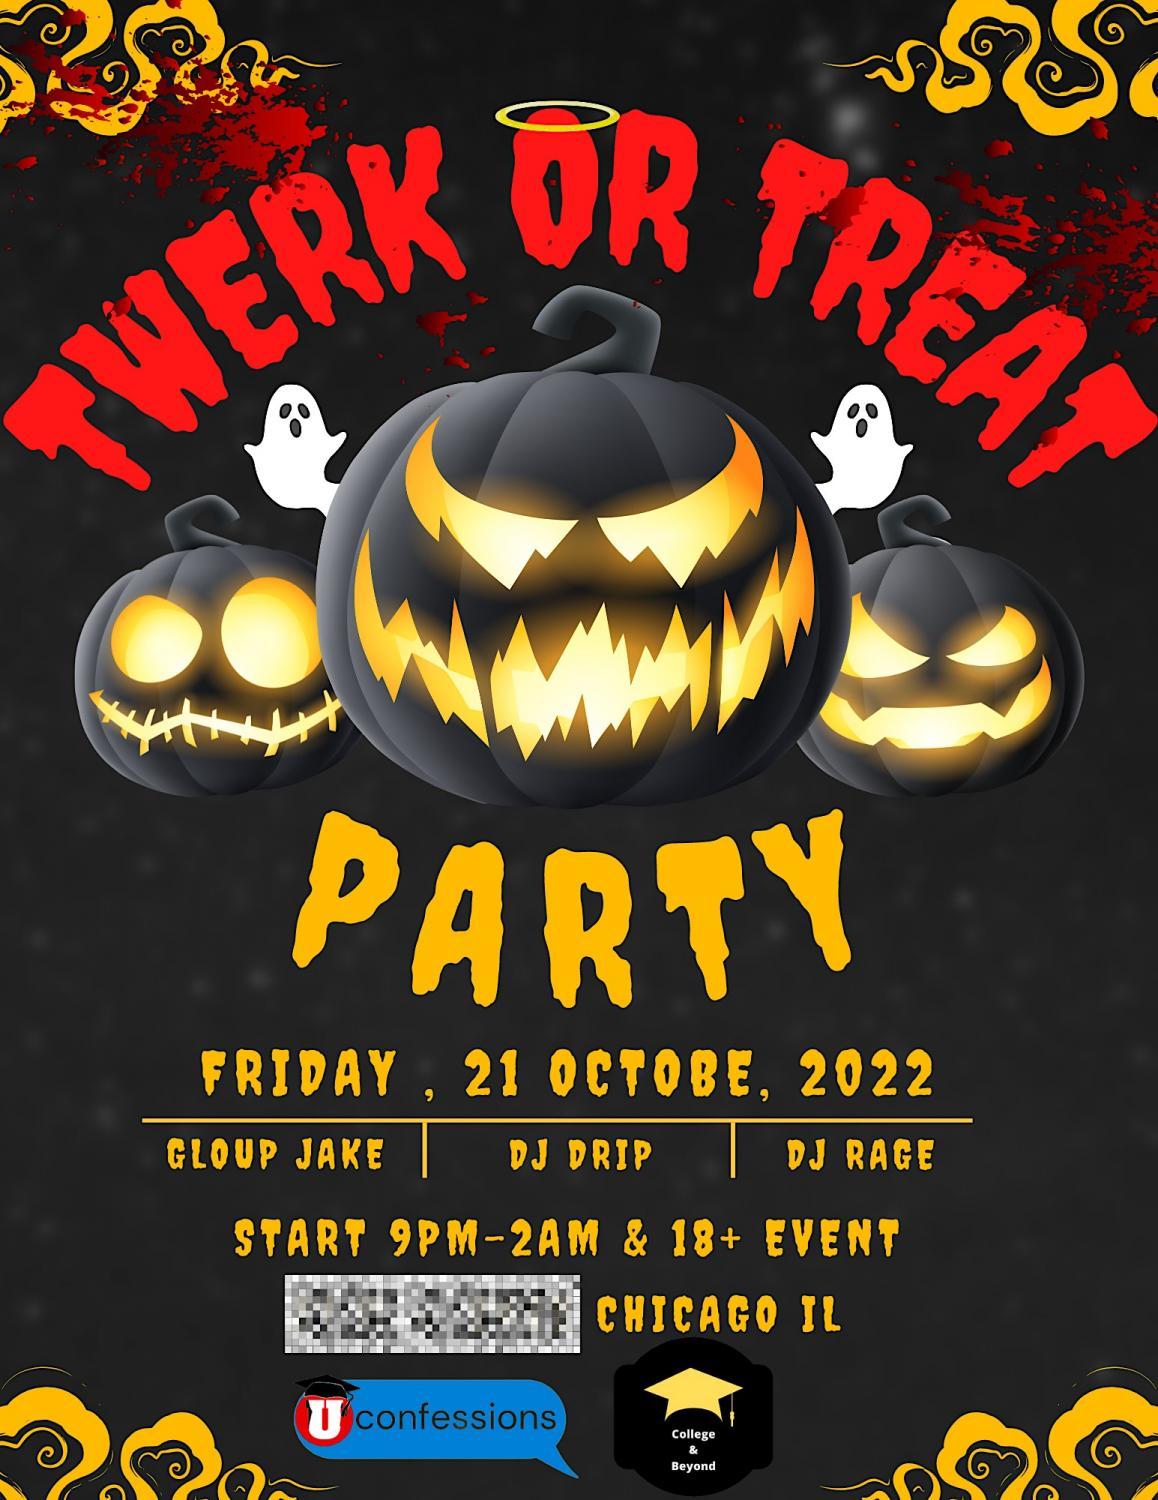 TWERK OR TREAT - Chicago's BIGGEST Halloween Party
Fri Oct 21, 9:00 PM - Sat Oct 22, 2:00 AM
in 2 days